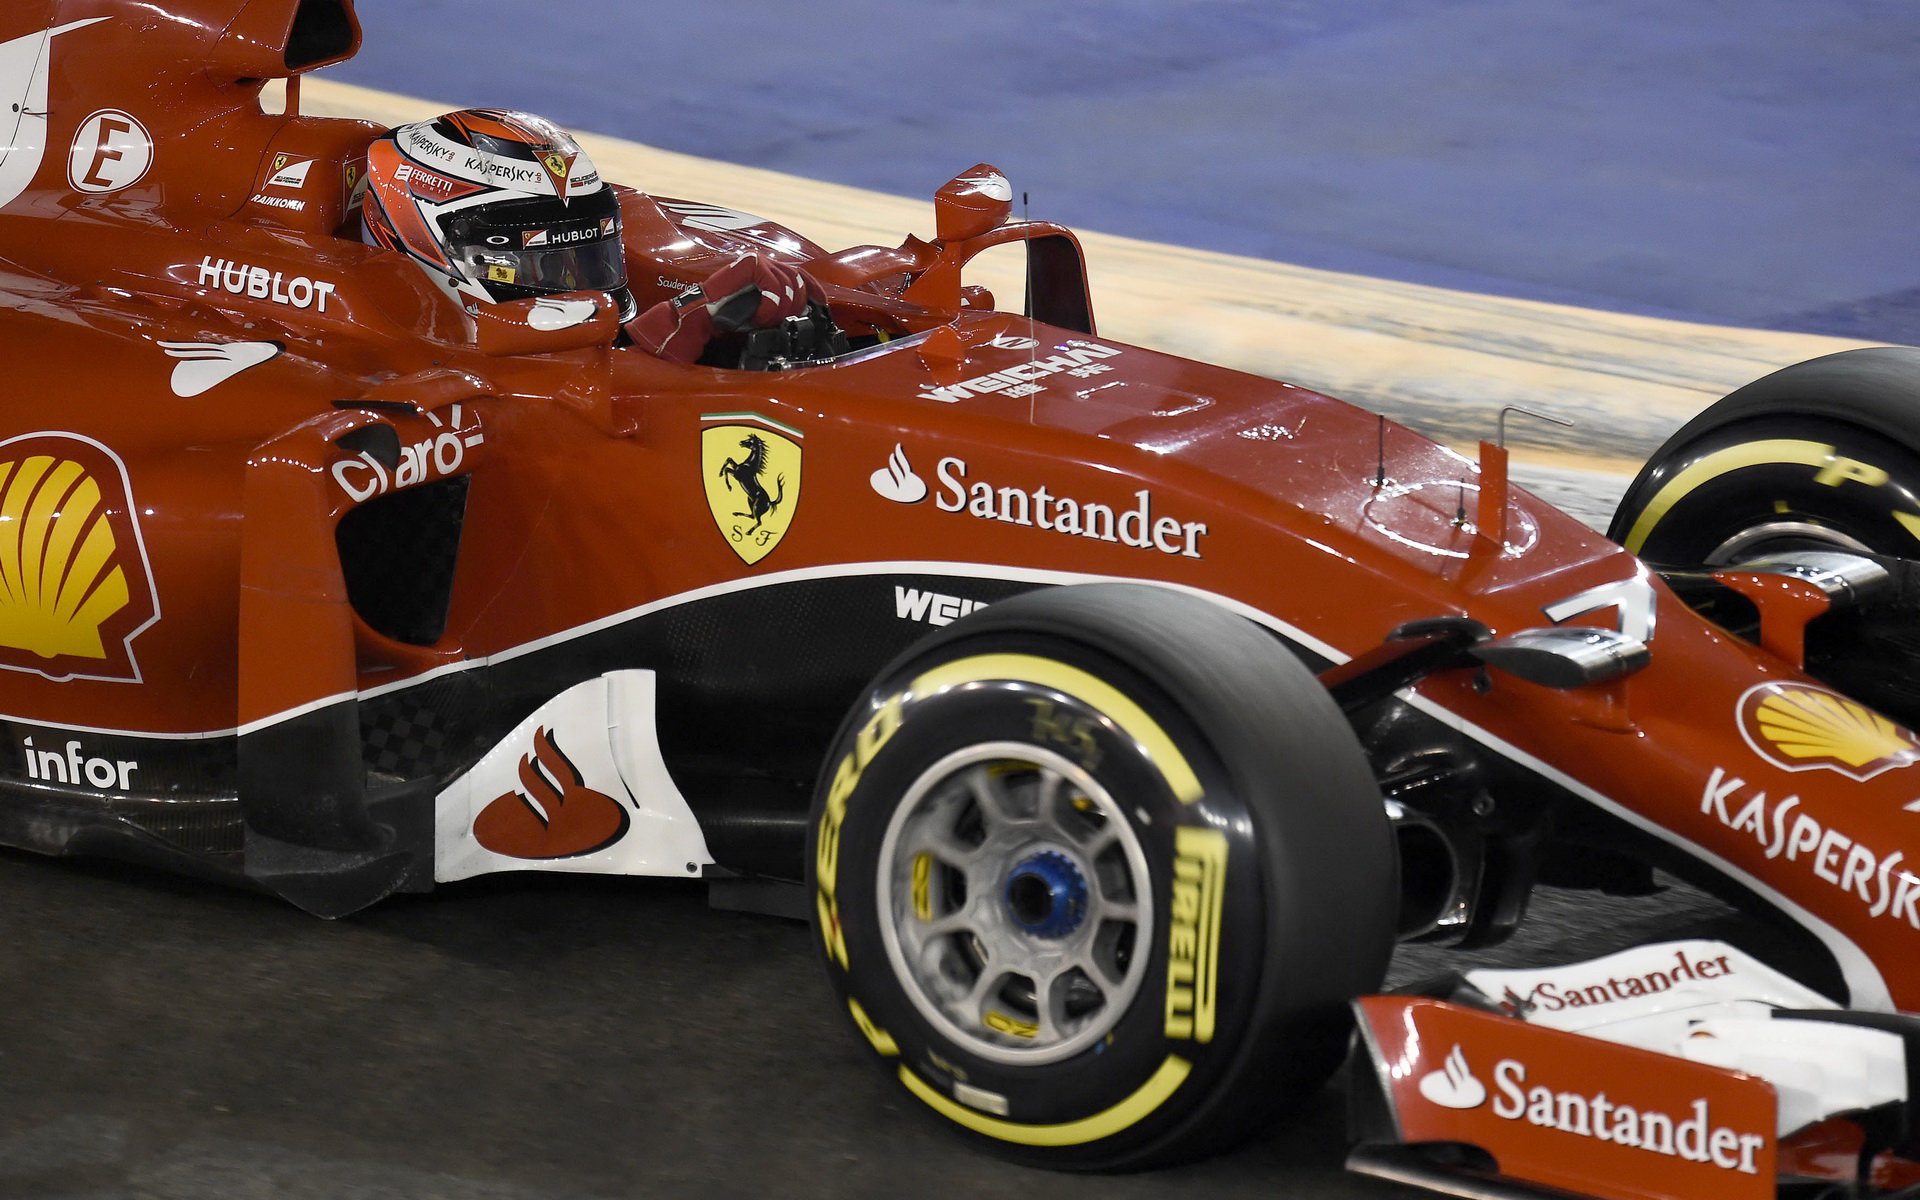 Kimi Räikkönen, GP Singapuru (Singapur)